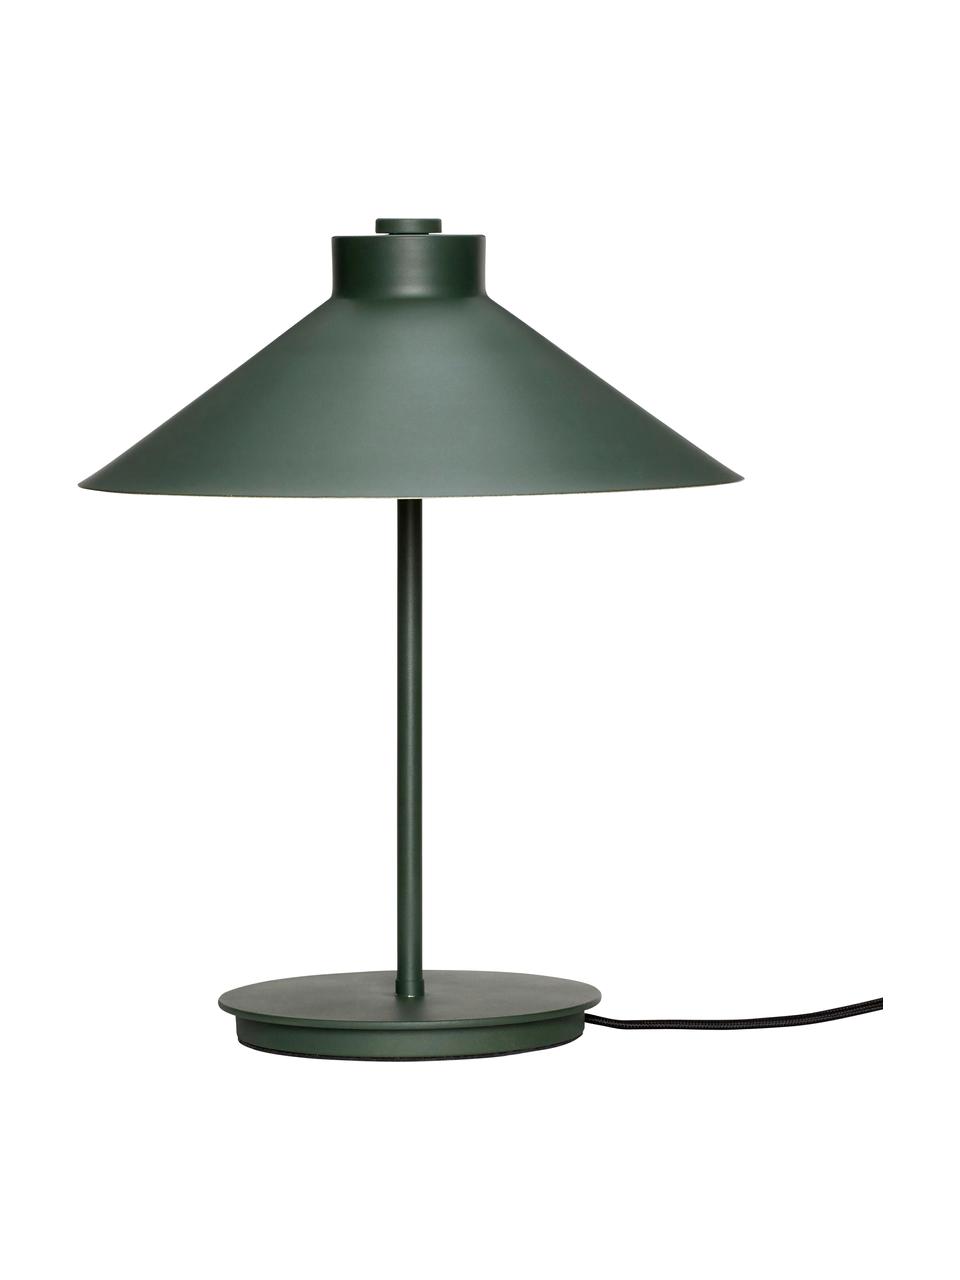 Design Tischlampe Garniur in Dunkelgrün, Lampenschirm: Metall, lackiert, Lampenfuß: Metall, lackiert, Dunkelgrün, Ø 30 x H 38 cm